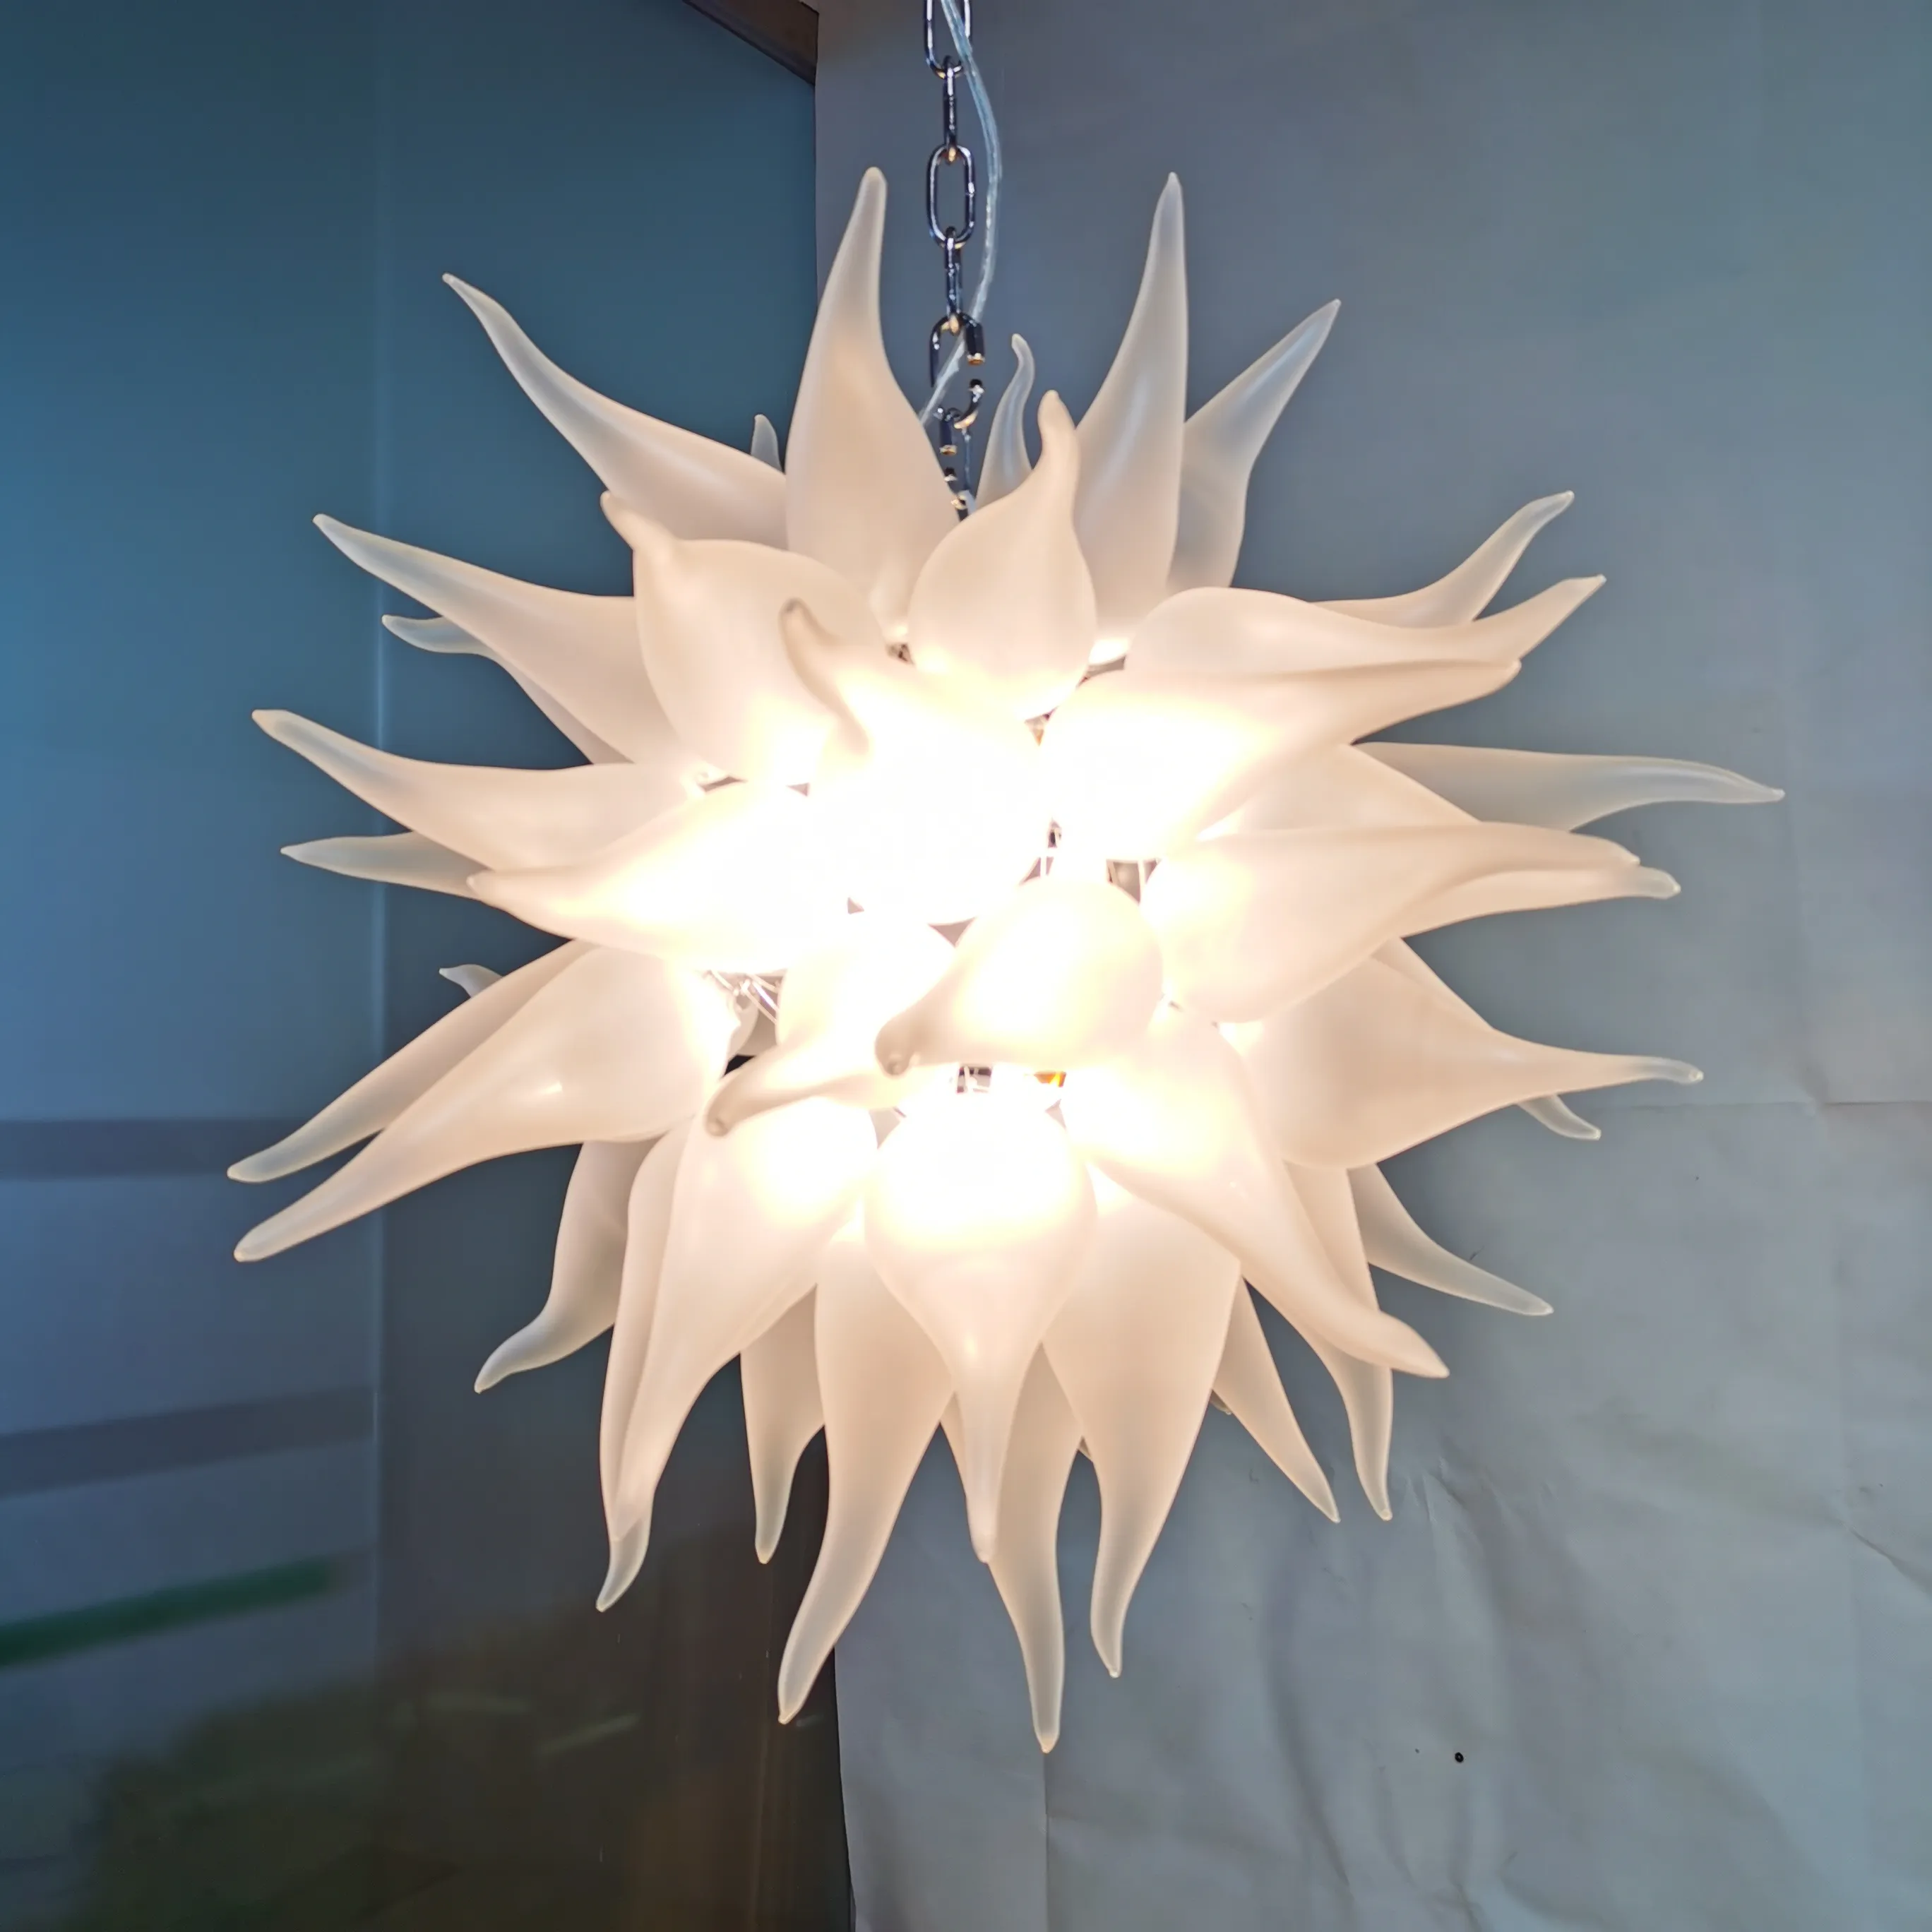 Белый цветок люстры освещения Современный дизайн висячие цепи люстры подвесные светильники Кристалл муранского стекла освещение Fxiture